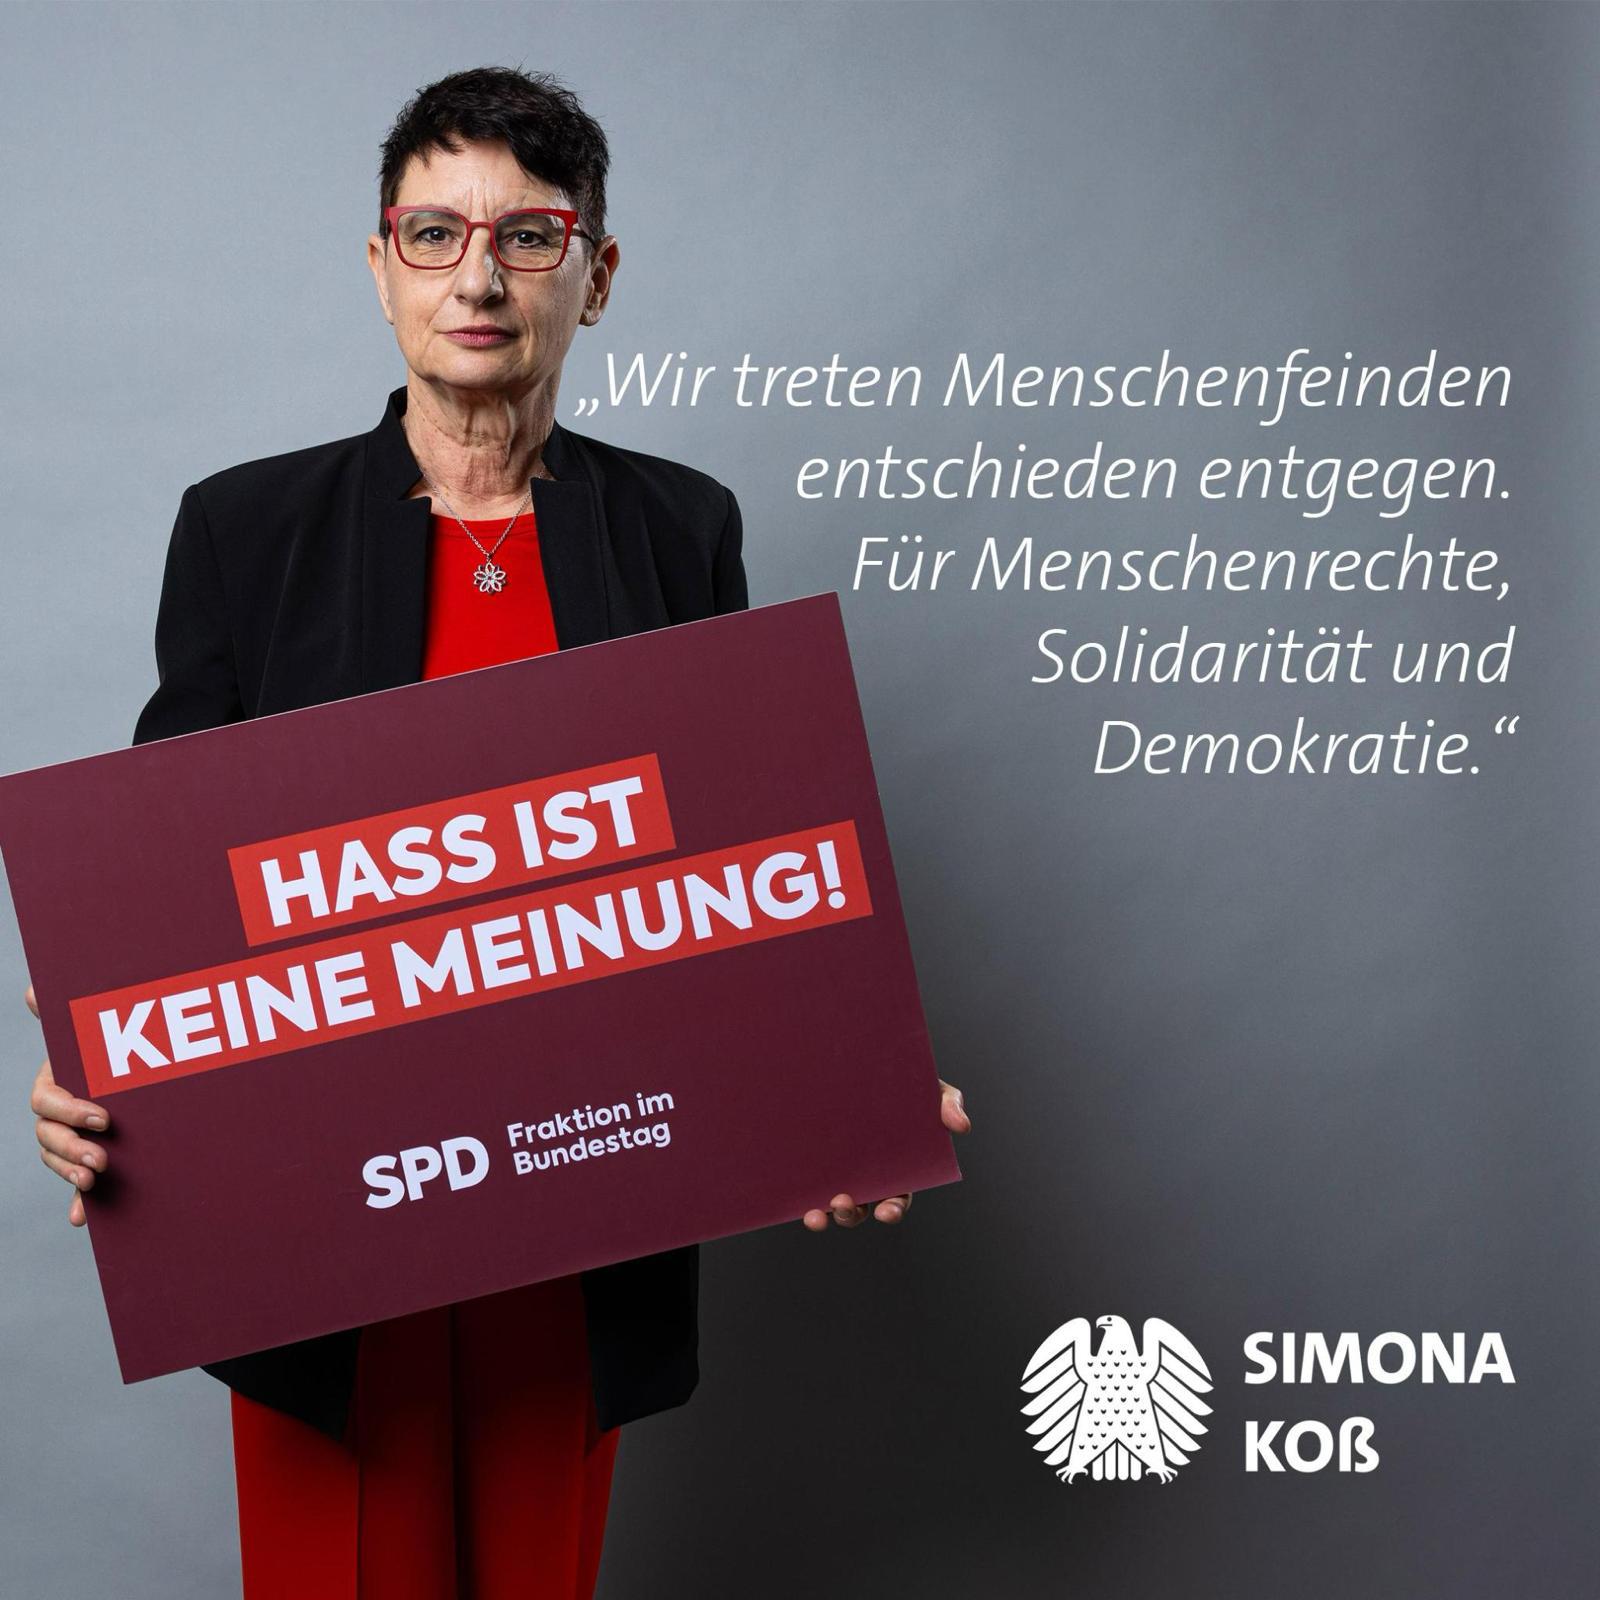 Simona Koß zum internationalen Tag gegen Rassismus "Hass ist keine Meinung" - "Wir treten entschieden entgegen. Für Menschenrechte, Solidarität und Demokratie."